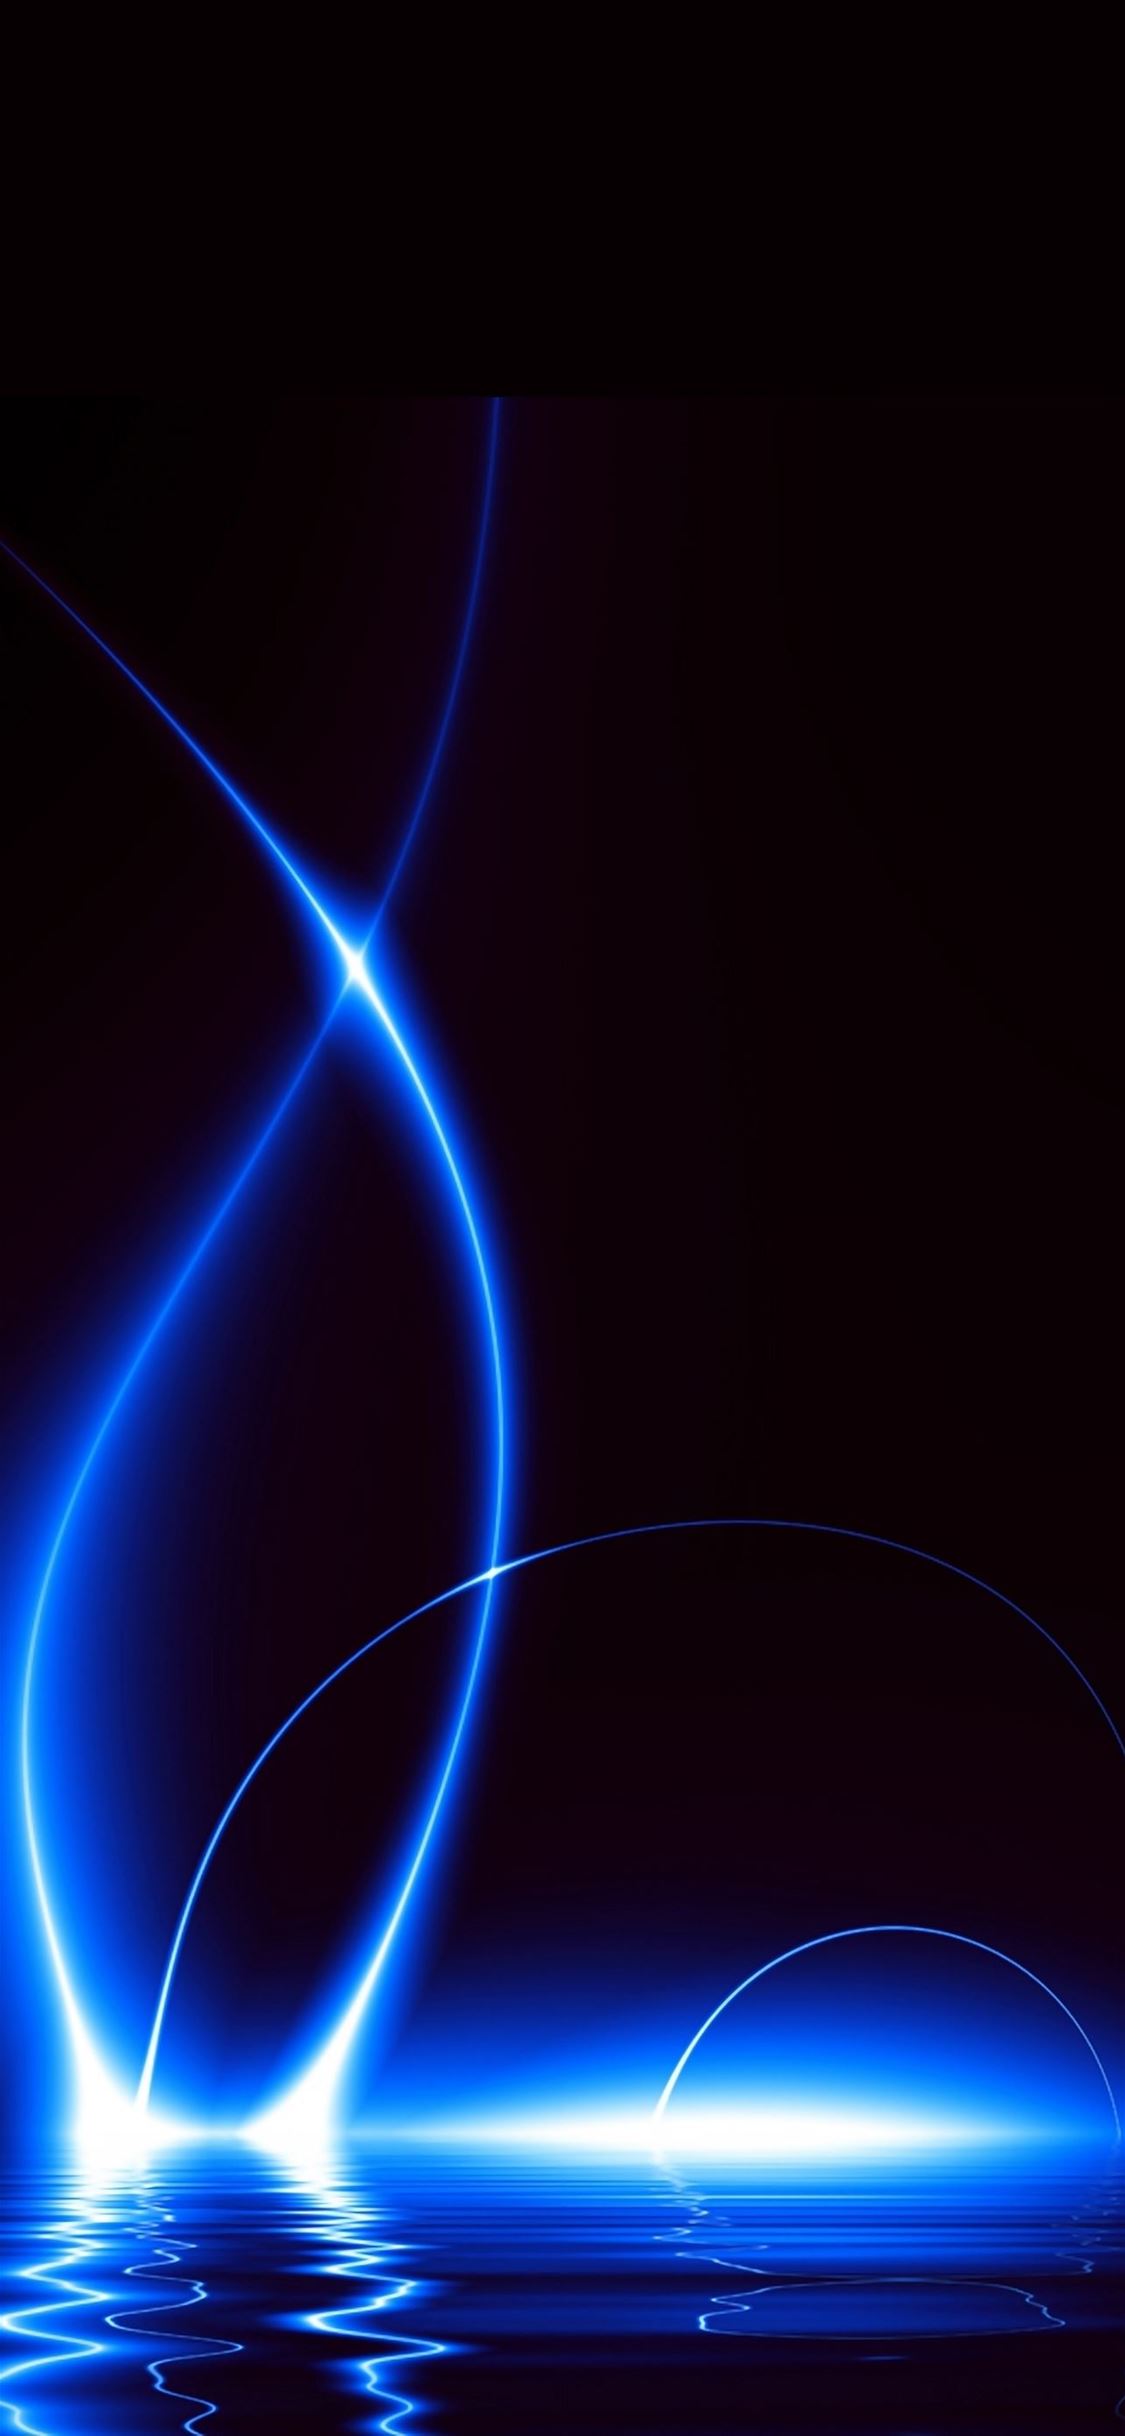 Blue Lights iPhone wallpaper 